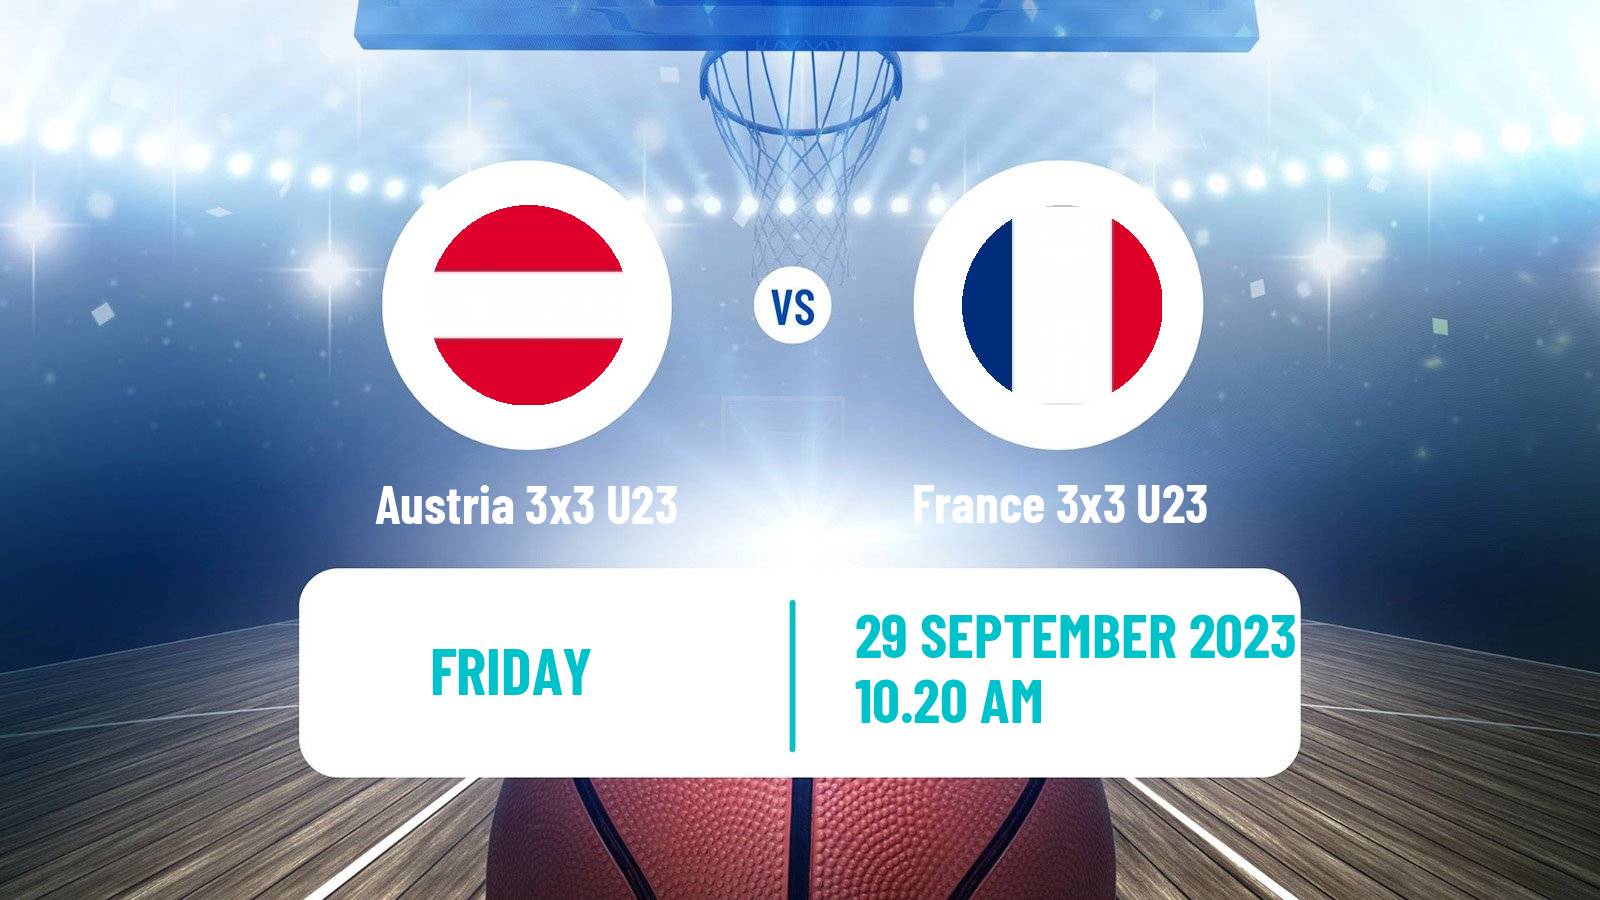 Basketball World Cup Basketball 3x3 U23 Austria 3x3 U23 - France 3x3 U23